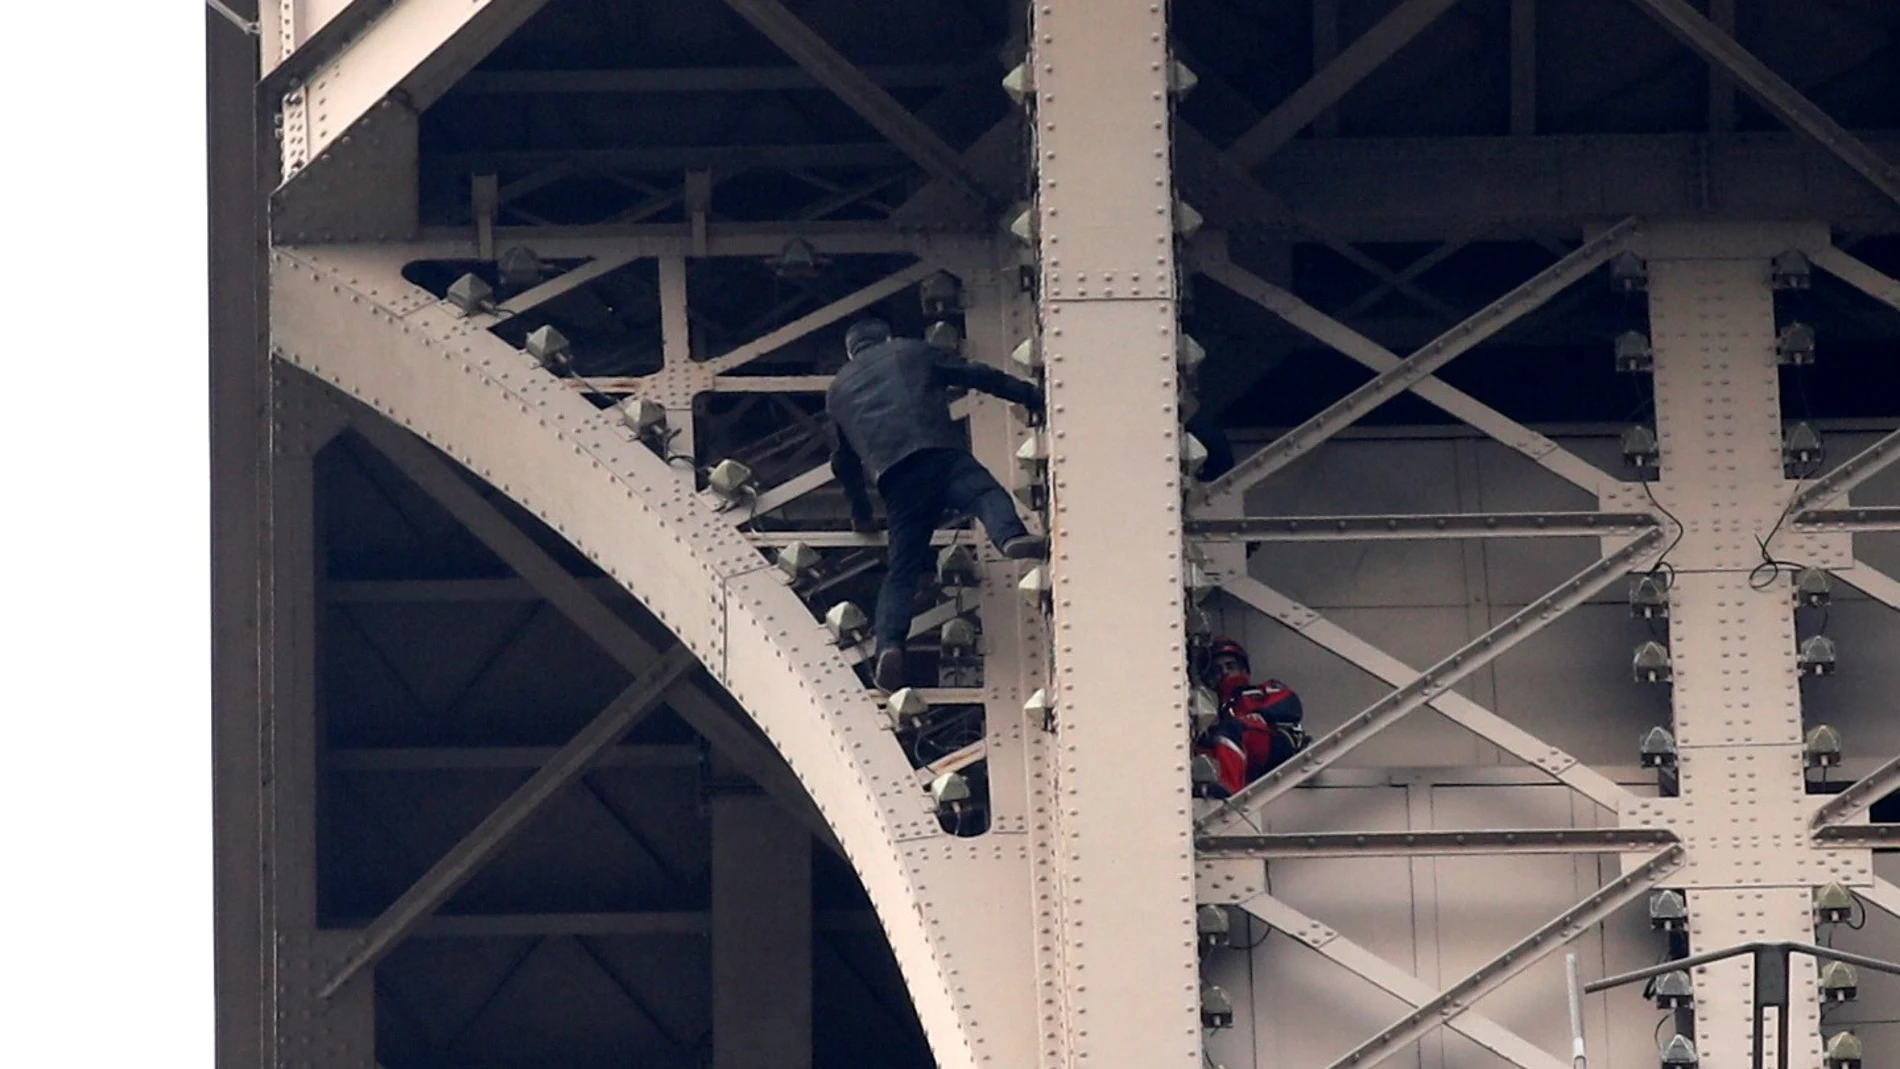 Un hombre escala la Torre Eiffel mientras varios bomberos tratan de detenerlo